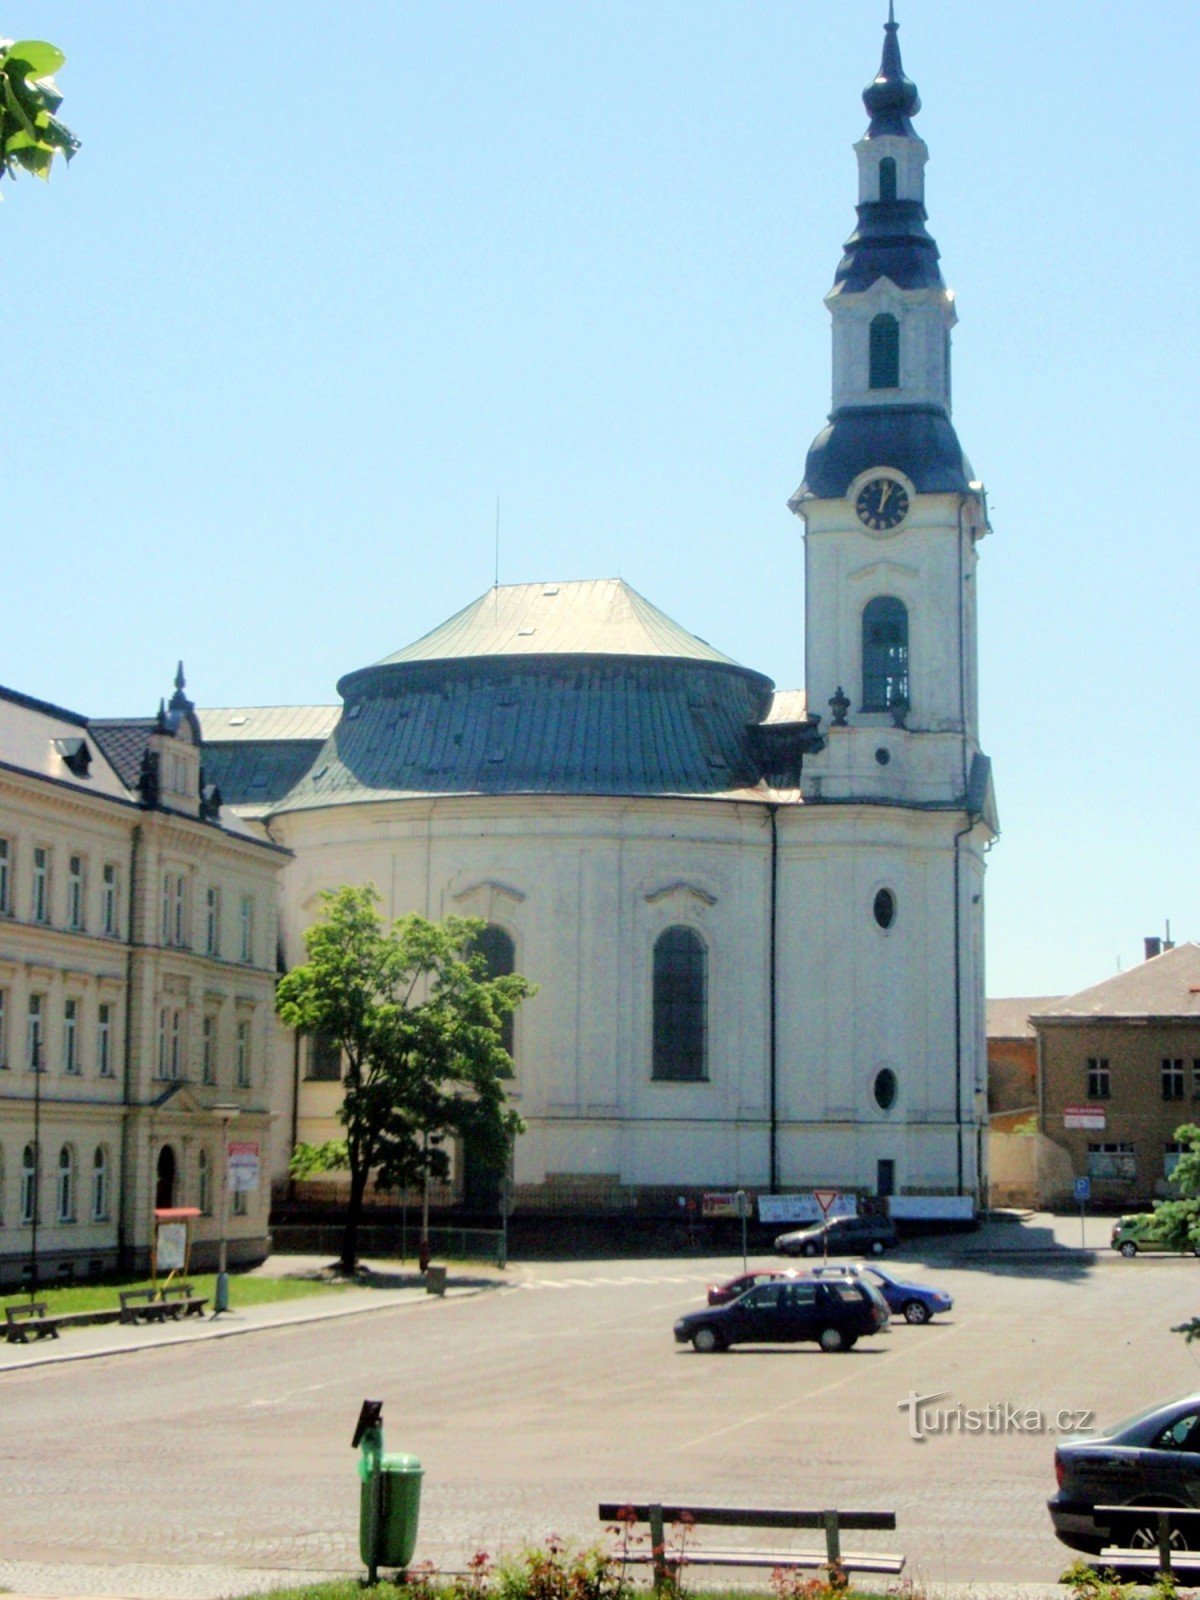 Nový Bor - Church of the Assumption of the Virgin Mary